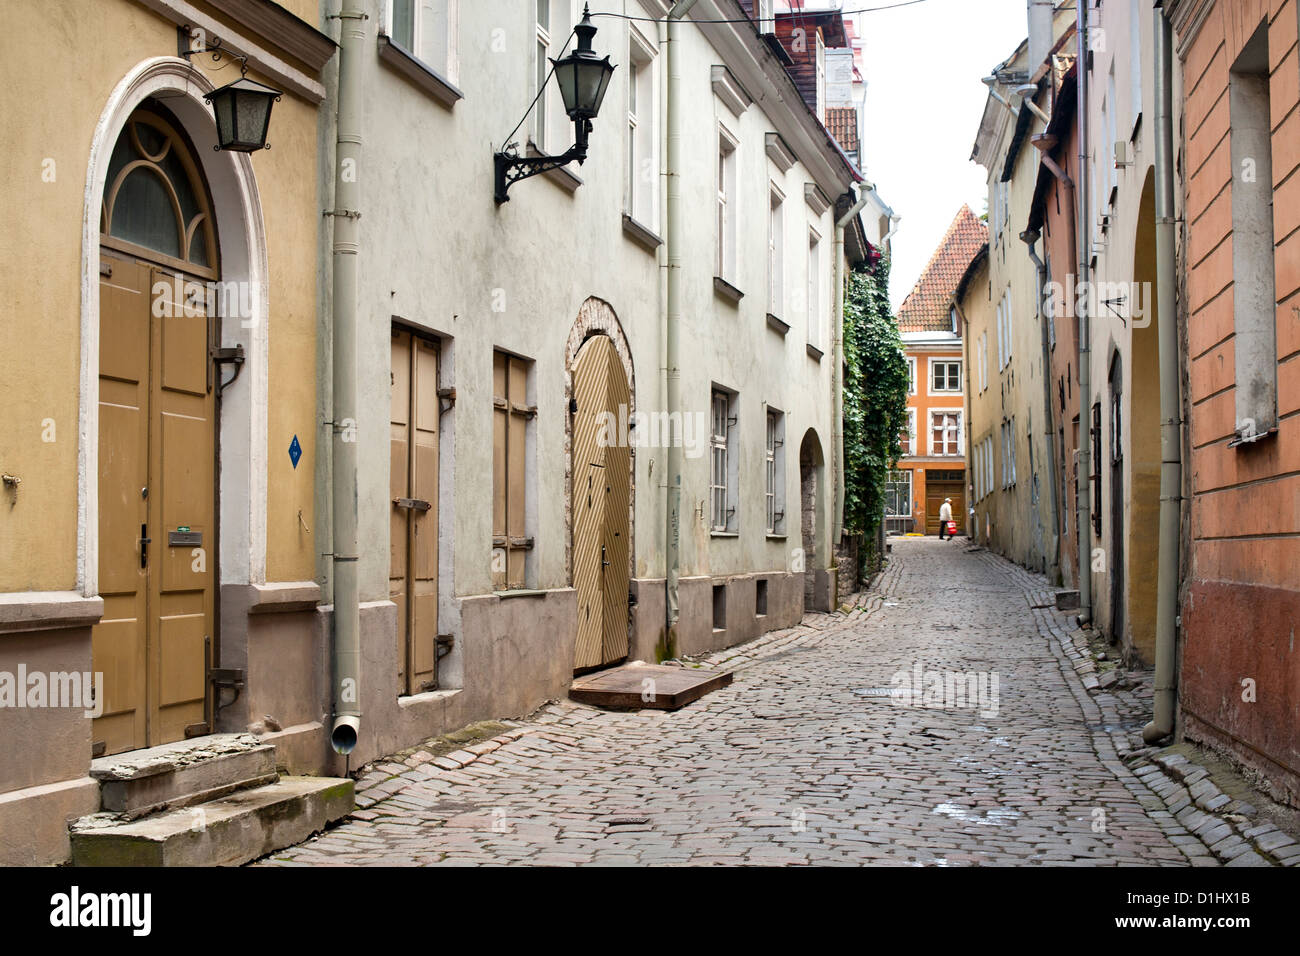 Una strada nella città vecchia di Tallinn, la capitale dell'Estonia. Foto Stock